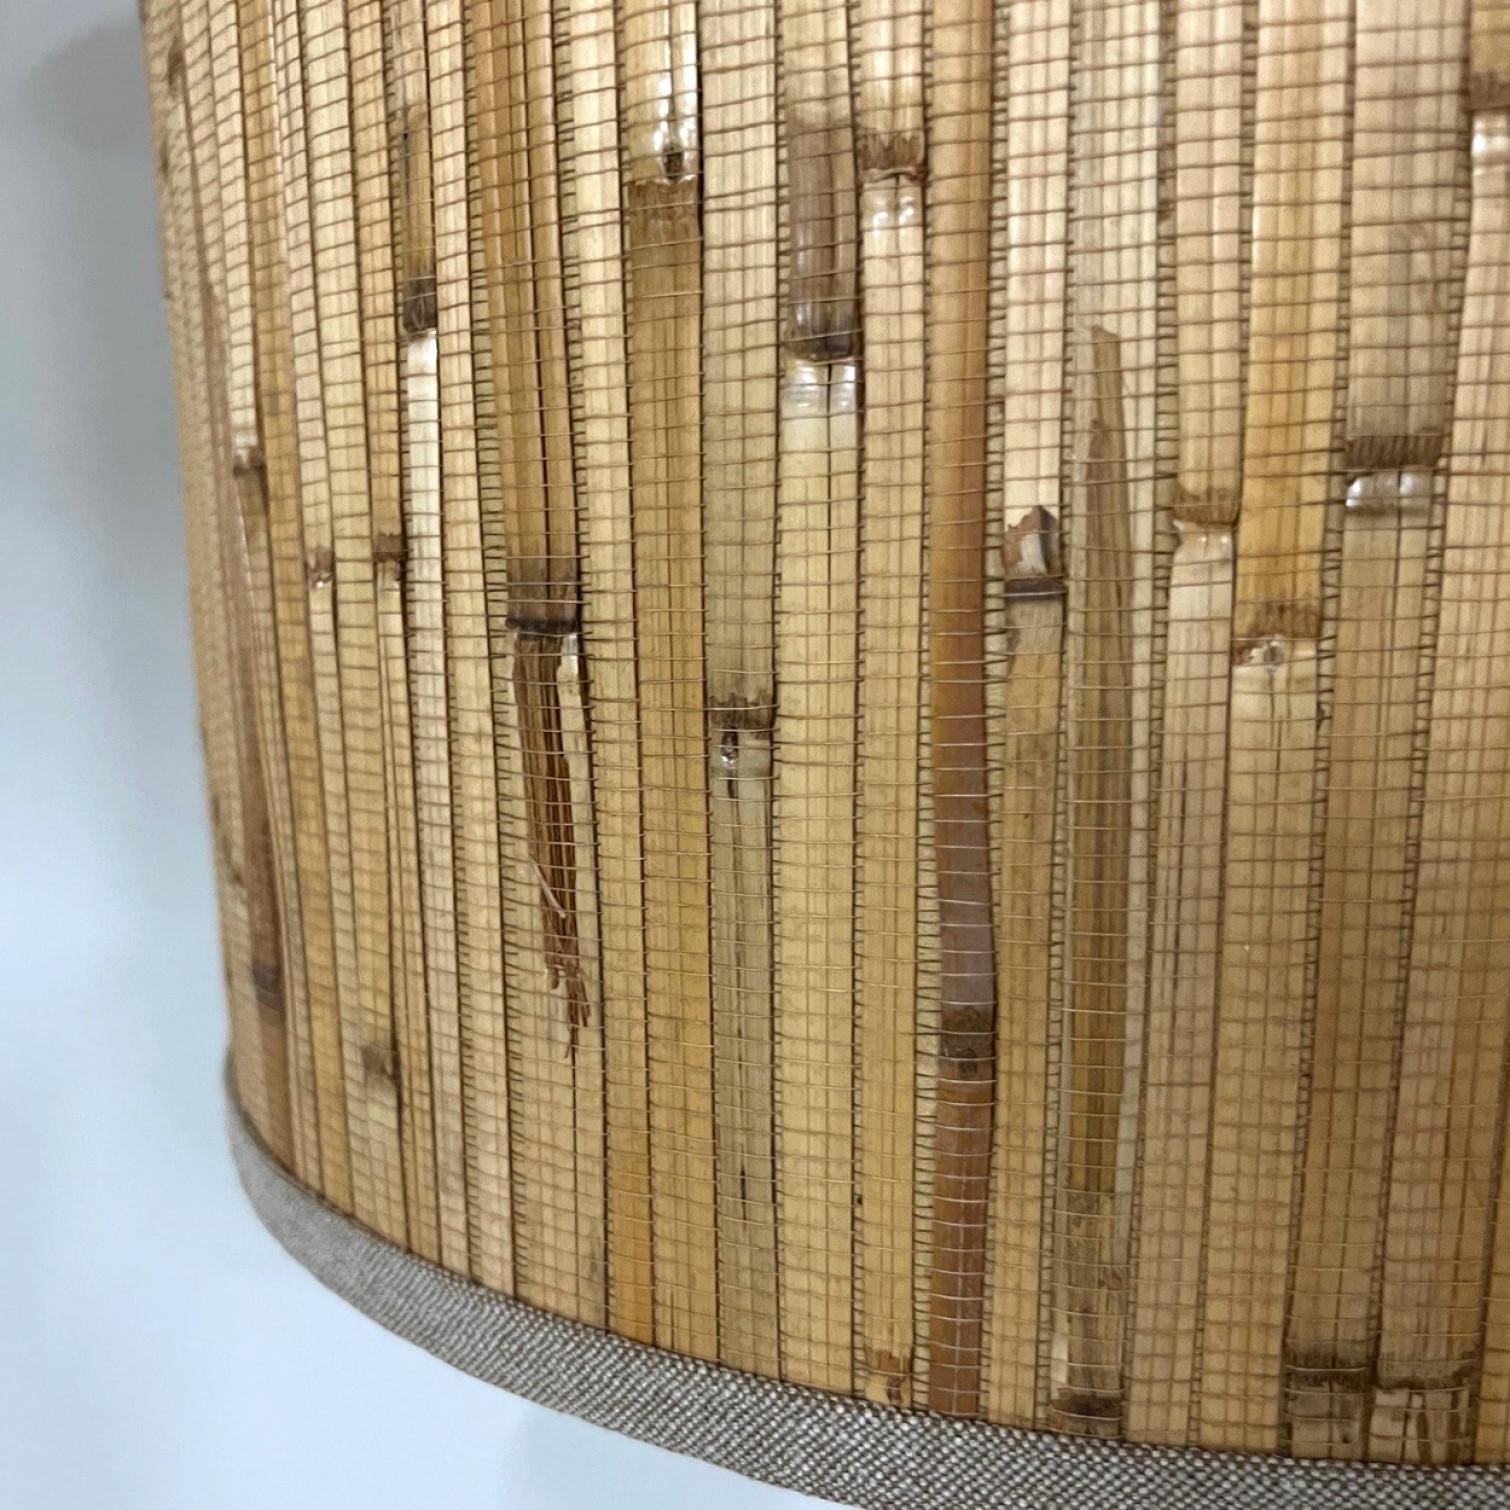 Paire d'élégantes lampes de table en bambou et laiton doré Modèle conçu par Ingo Maurer, 1968 pour Design/One, Munich, Allemagne.
Avec de nouveaux abat-jour en bambou fabriqués sur mesure avec un abat-jour intérieur en bronze. Réalisé par René